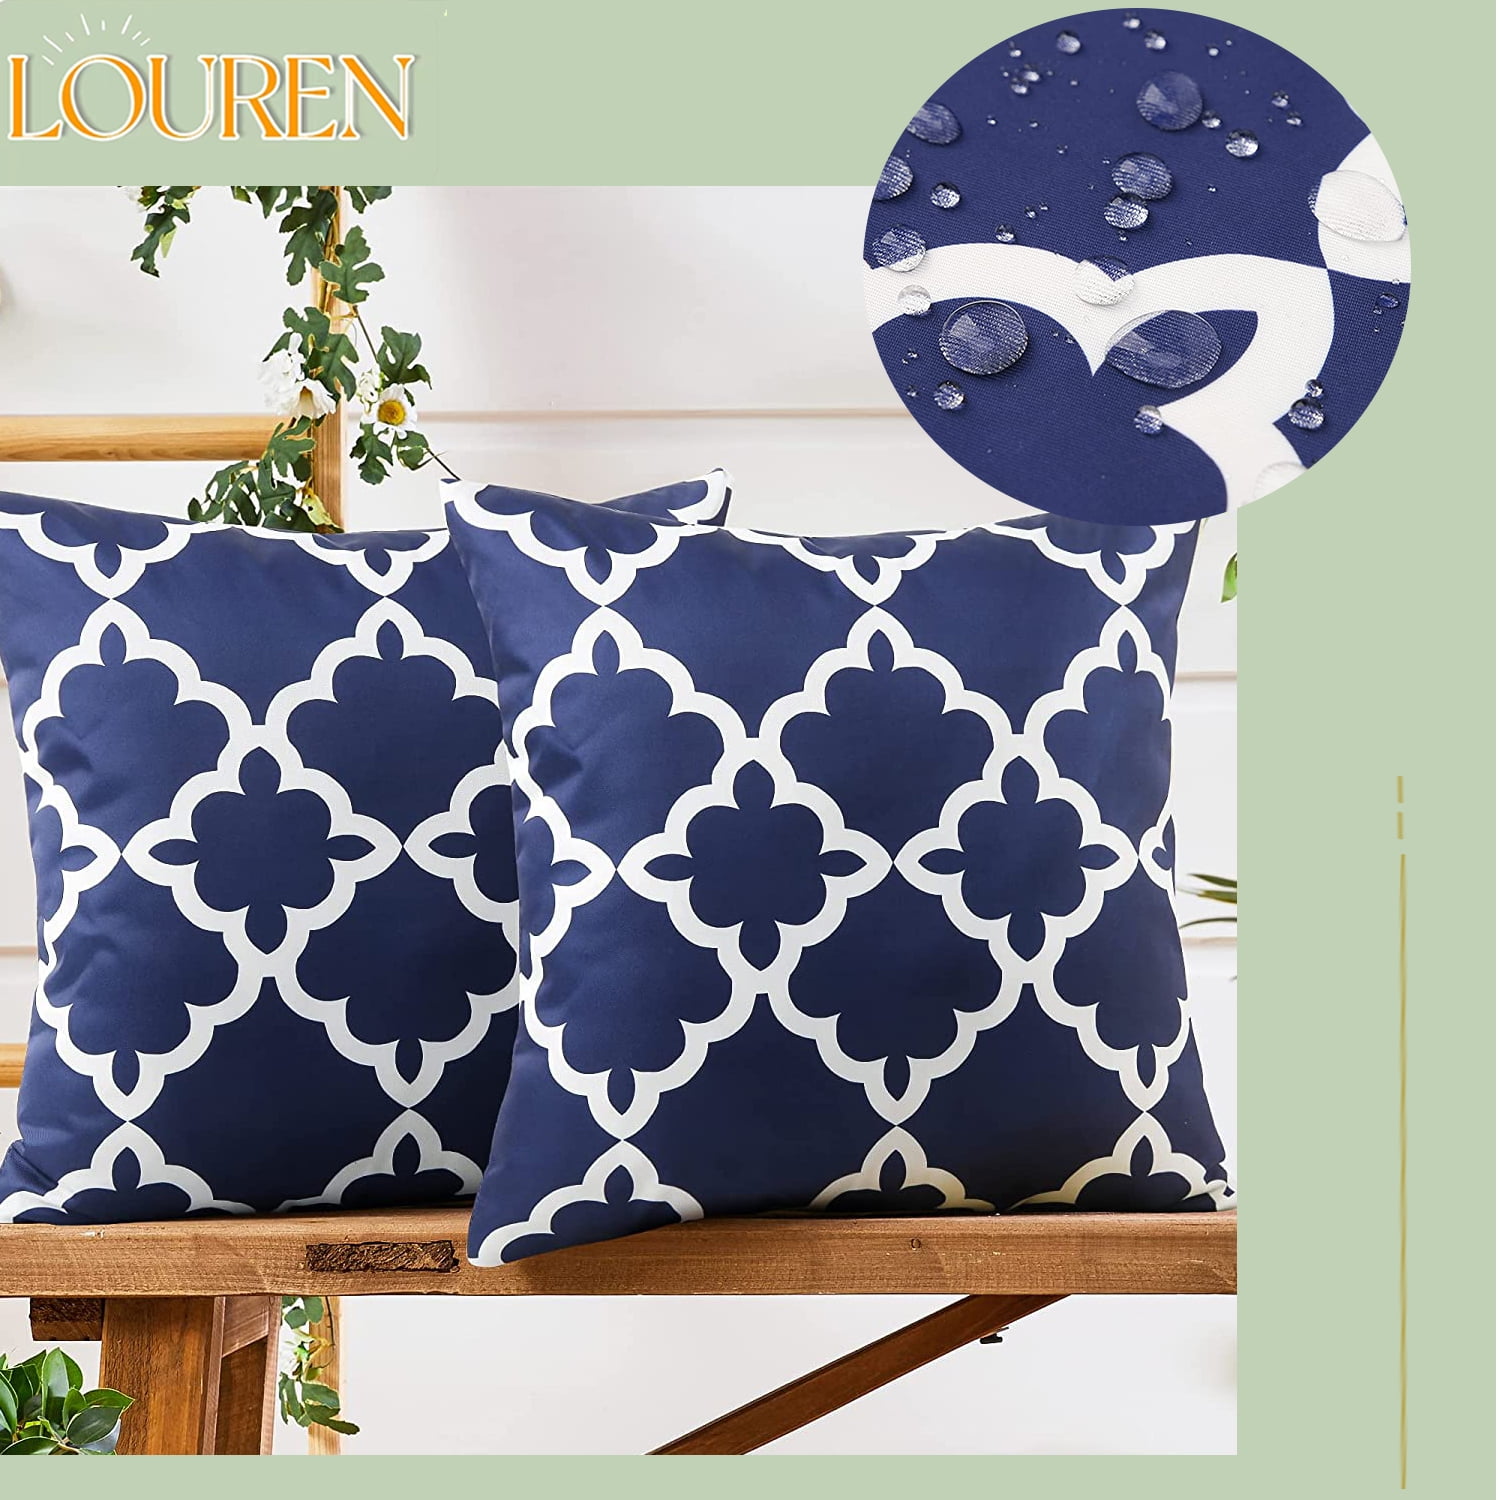 Kabuer Outdoor Waterproof Pillow Covers Outdoor Pillow Covers 18x18 inch Outdoor Patio Pillows Covers Set of 2 Orange